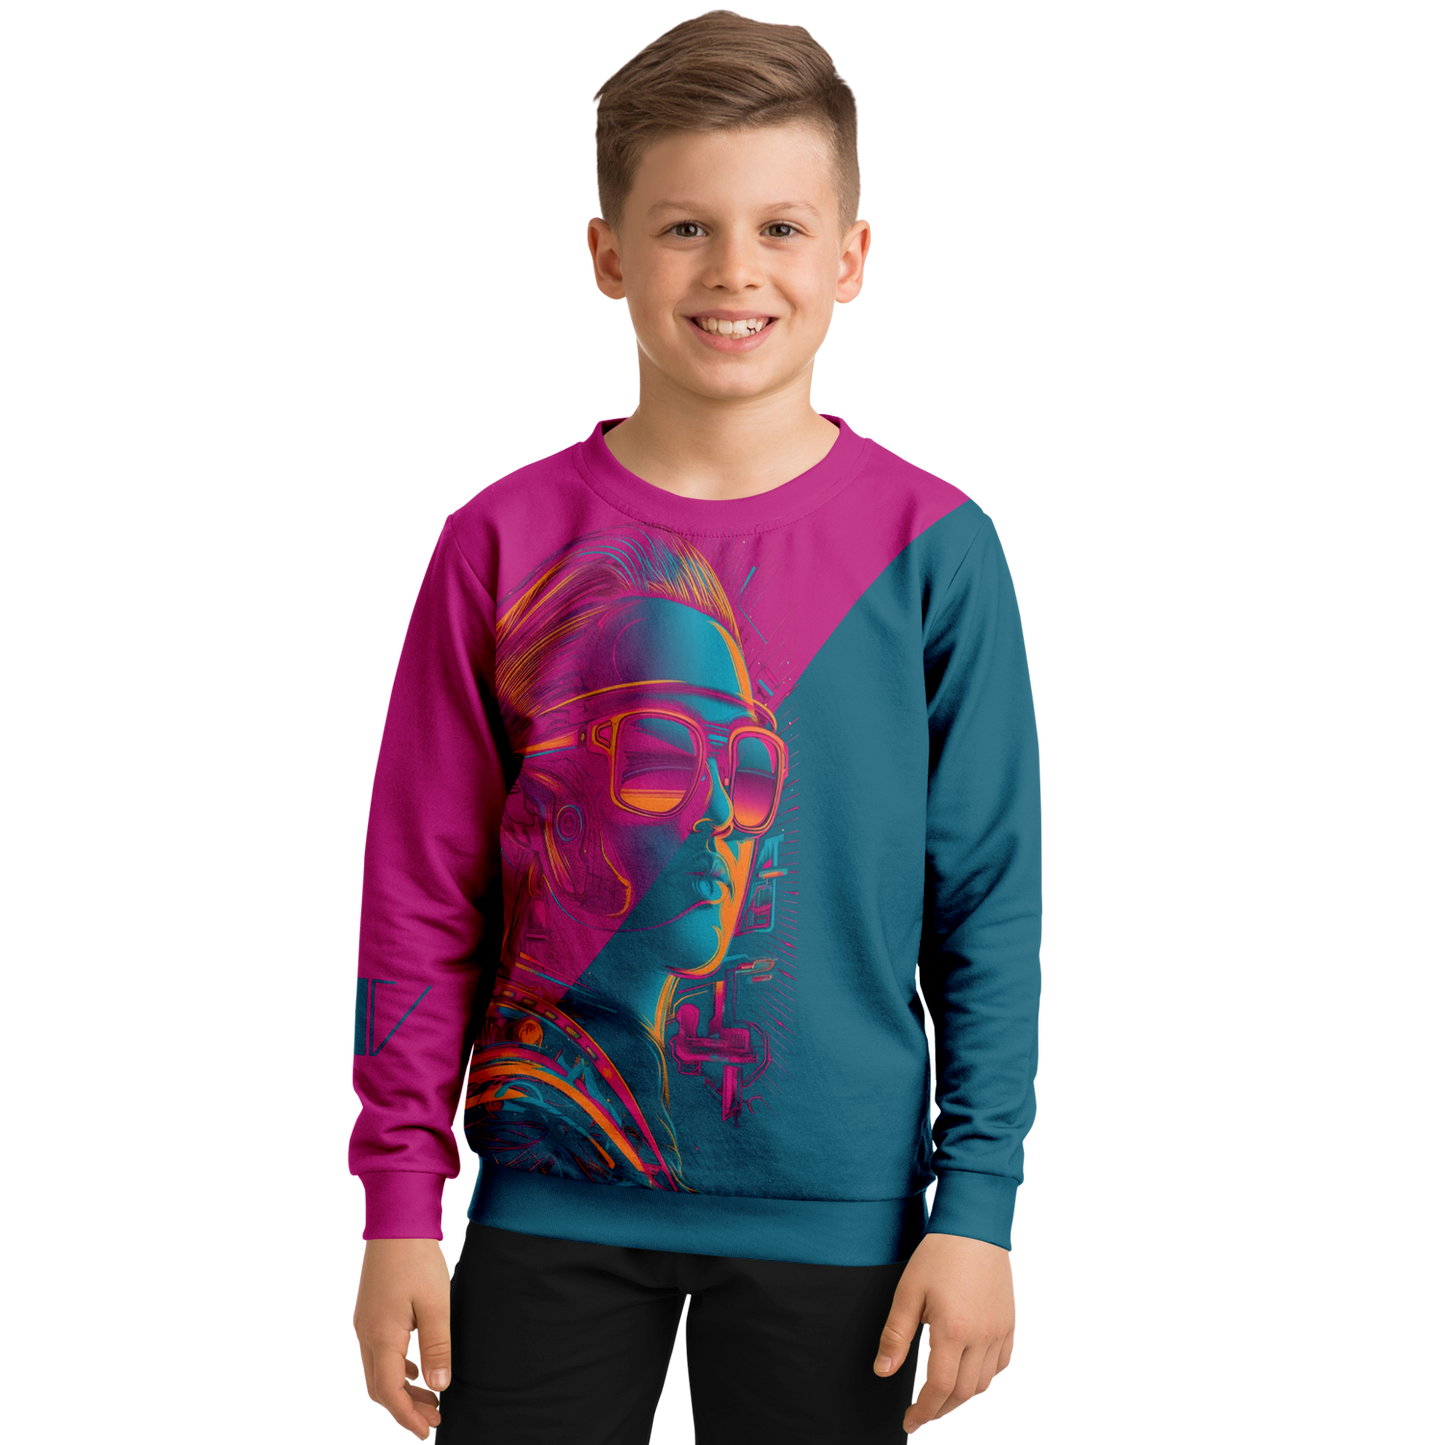 Athletic Kids/Youth Sweatshirt – AOP 012